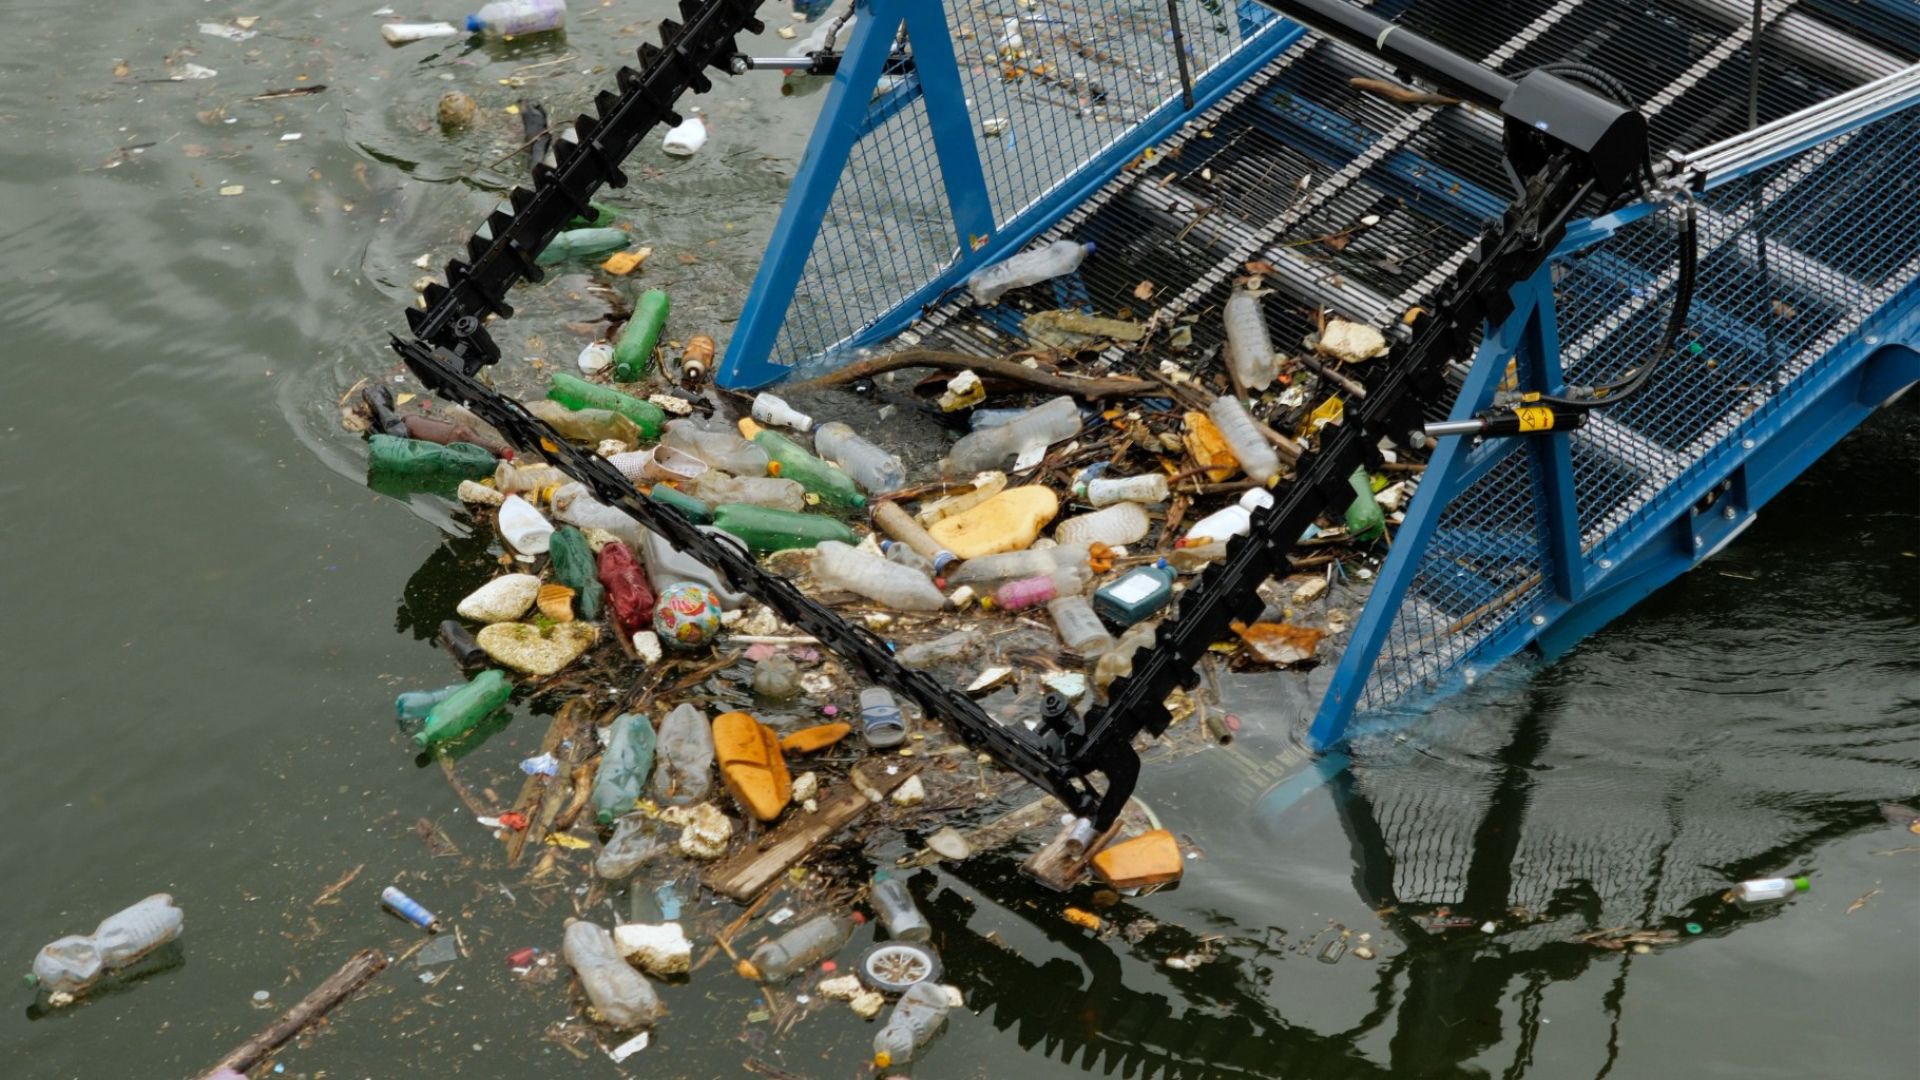 21. April 2021 Start der Mission | Heute geht es los! Die „Clean Future“ ist in Serbien angekommen und wird entlang der Donau und ihrer Nebenflüsse, eben dort, wo viele Müllhotspots sind, den im Wasser treibenden Müll einsammeln. Mit einem Förderband kann das CollectiX-Boot bis zu 20 Tonnen sämtlicher Müllarten pro Tag aus dem Fluss entfernen. Anschließend kümmert sich eine Spezialfirma um das Waschen und Sortieren des Mülls.